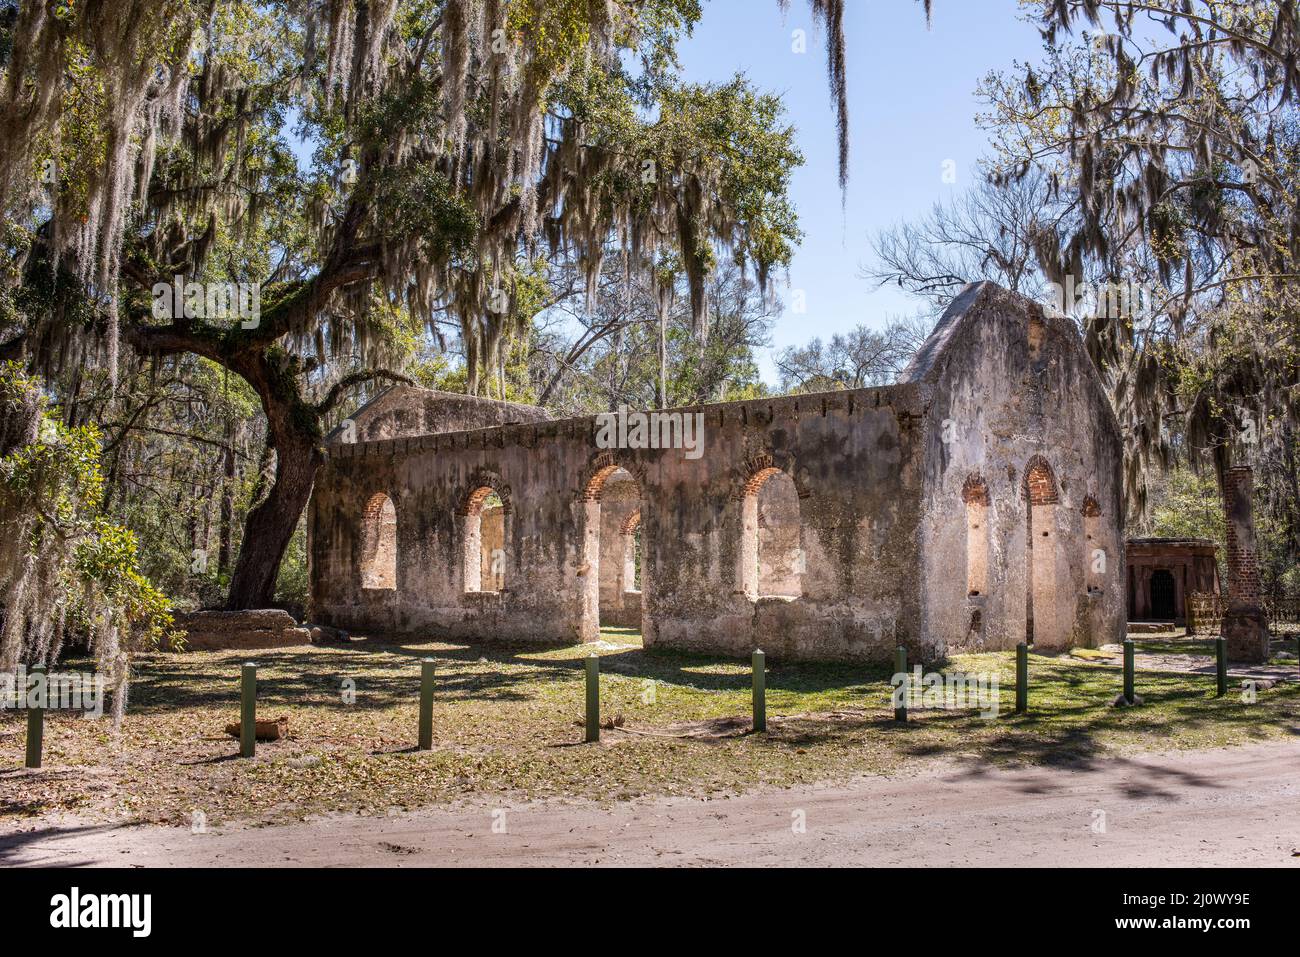 La chapelle de l'Ease est un site historique situé à l'île de Sainte-Hélène, en Caroline du Sud, une des îles de la mer de Caroline du Sud. Banque D'Images